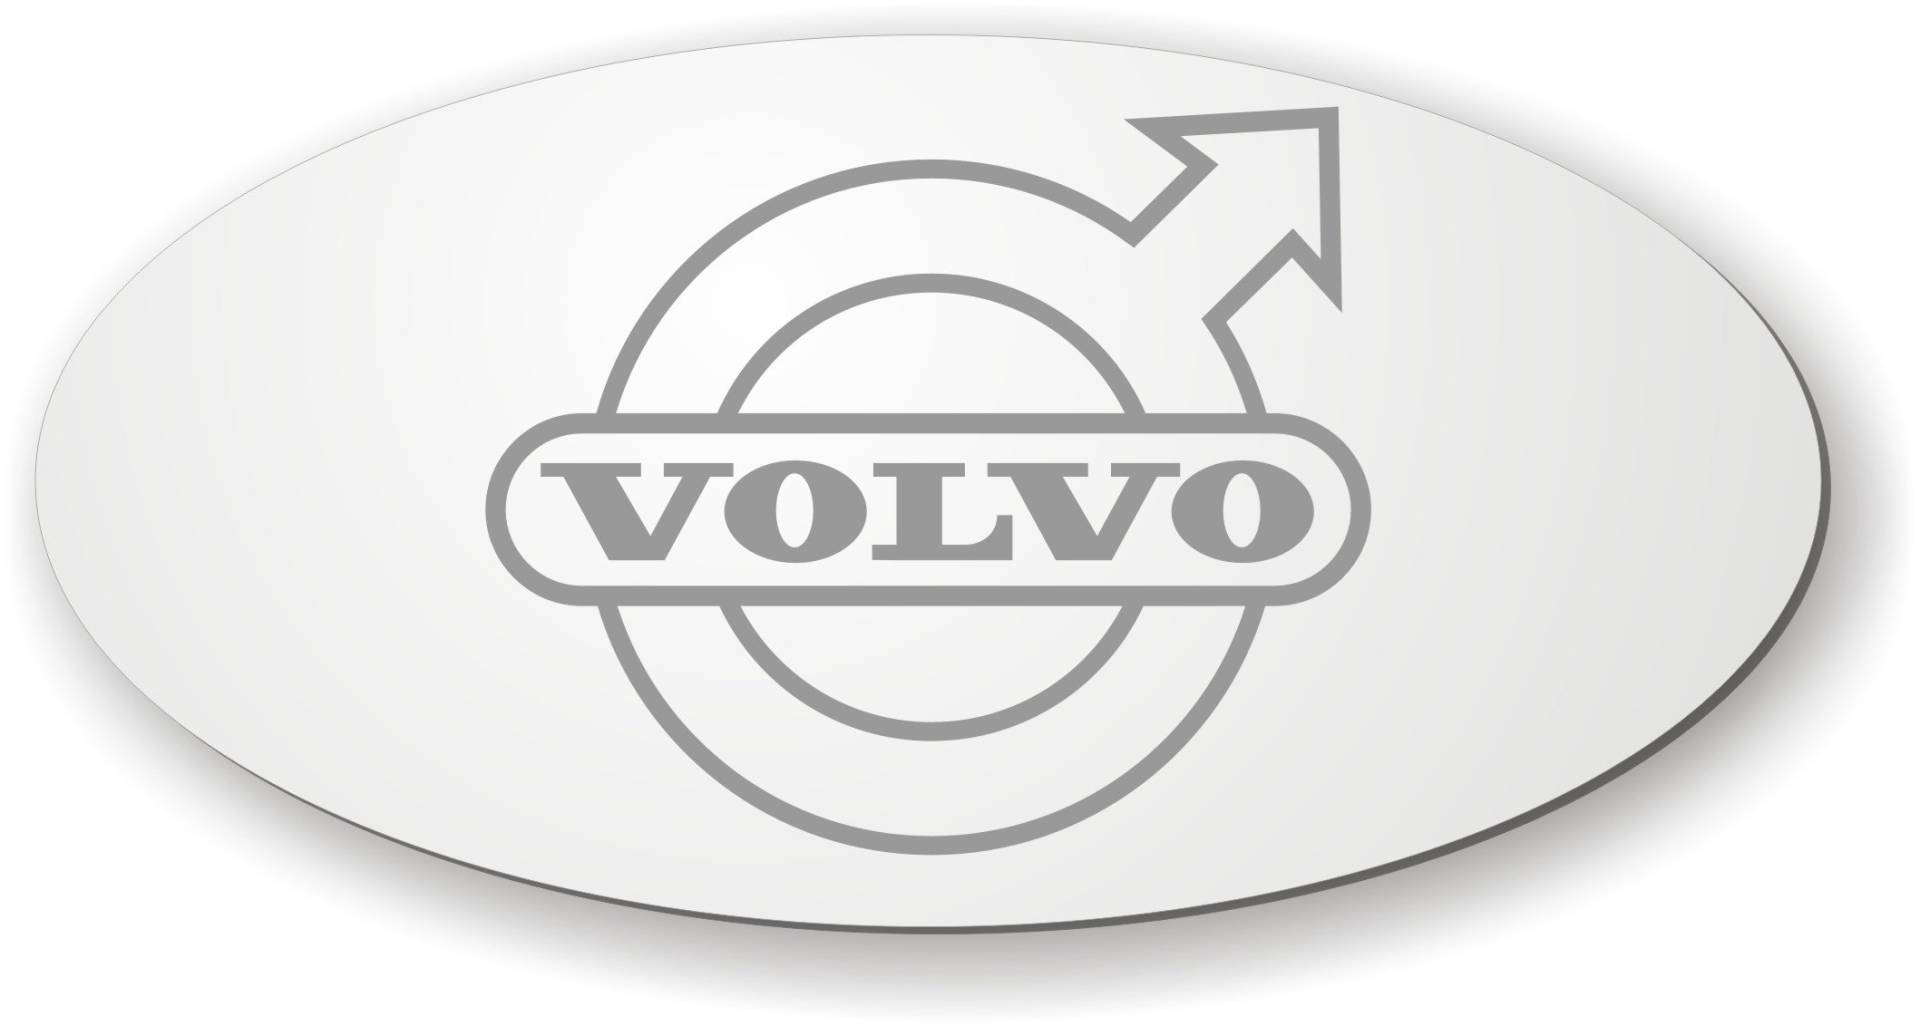 Schilderfeuerwehr Spiegel kompatibel mit Volvo für die Rückwand ✓ Aufkleber ✓ Sticker✓ LKW-Zubehör und Artikel für Innenausstattung ✓ Rückwandspiegel ✓ Truck Accessoires für den Innenraum ✓ von Schilderfeuerwehr